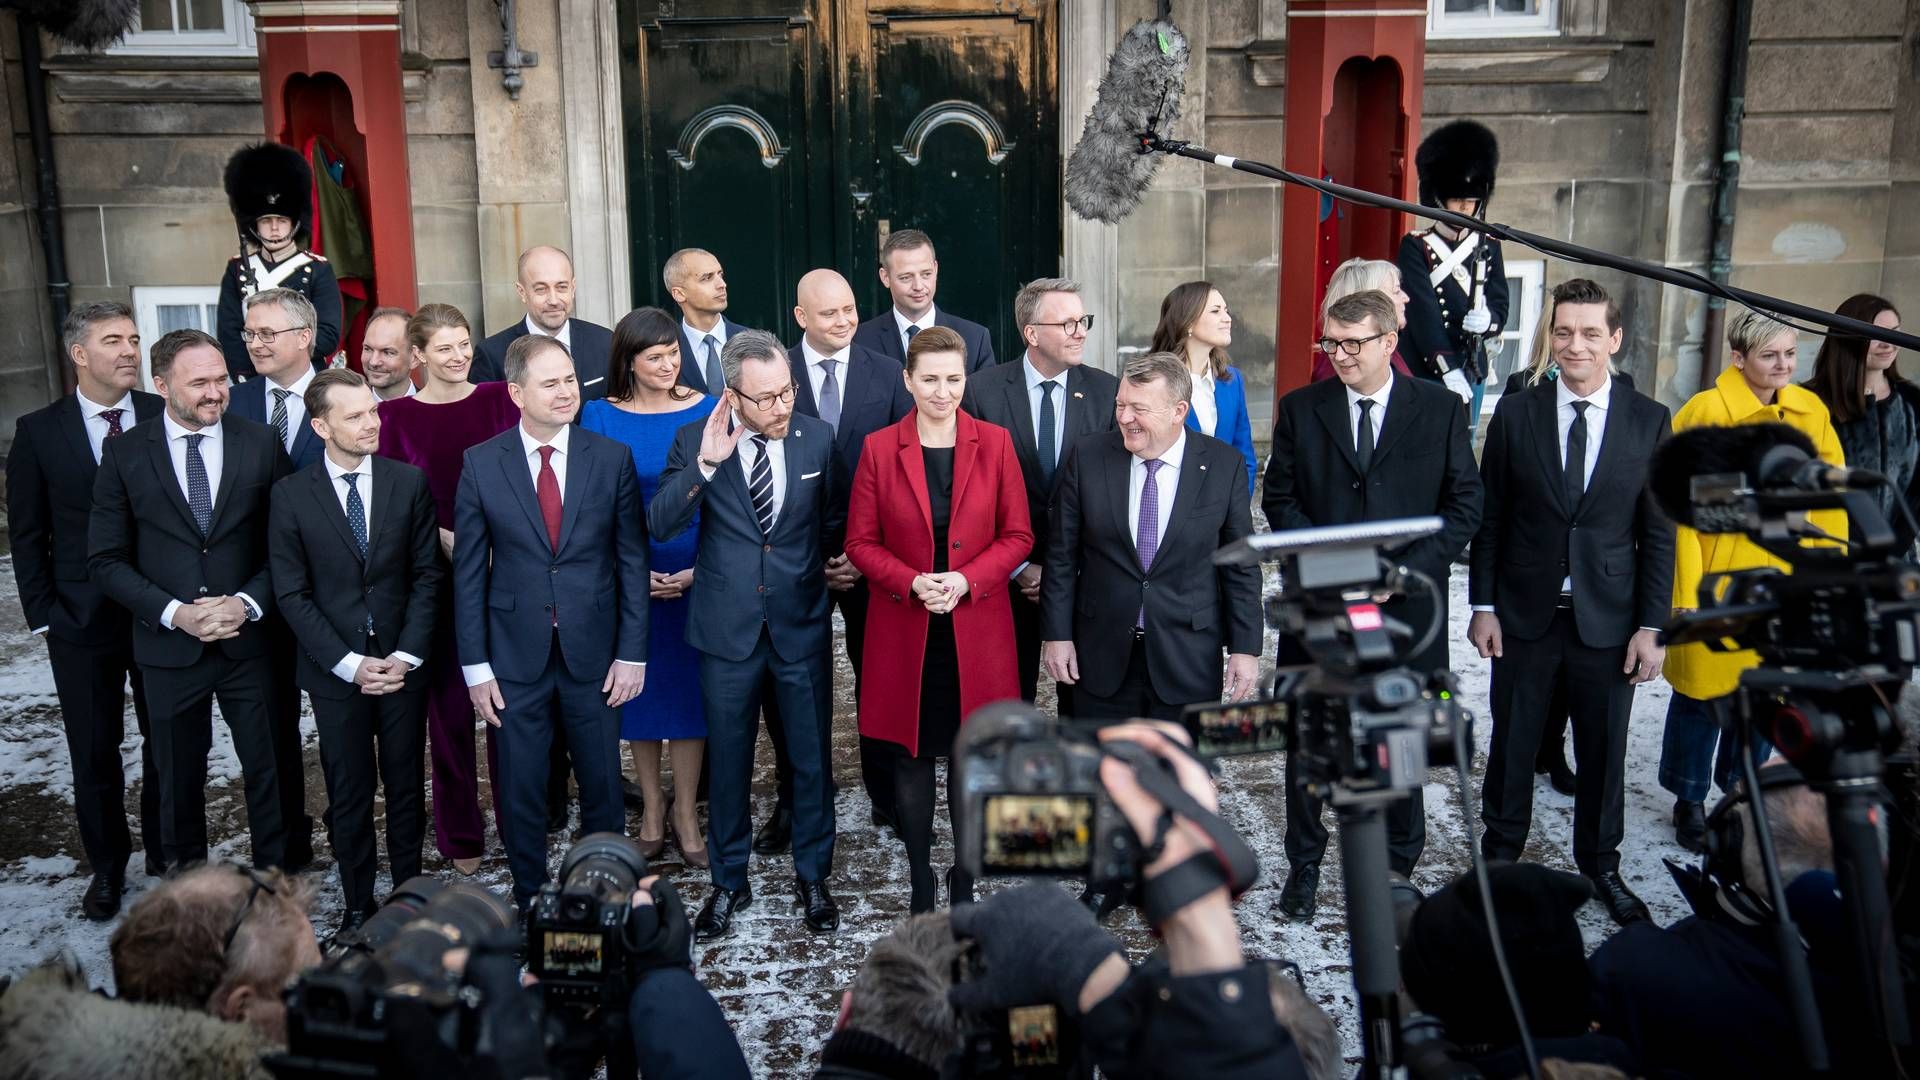 Den nye SVM-regerings ministre blev torsdag præsenteret uden for Amalienborg. | Foto: Mads Claus Rasmussen/Ritzau Scanpix